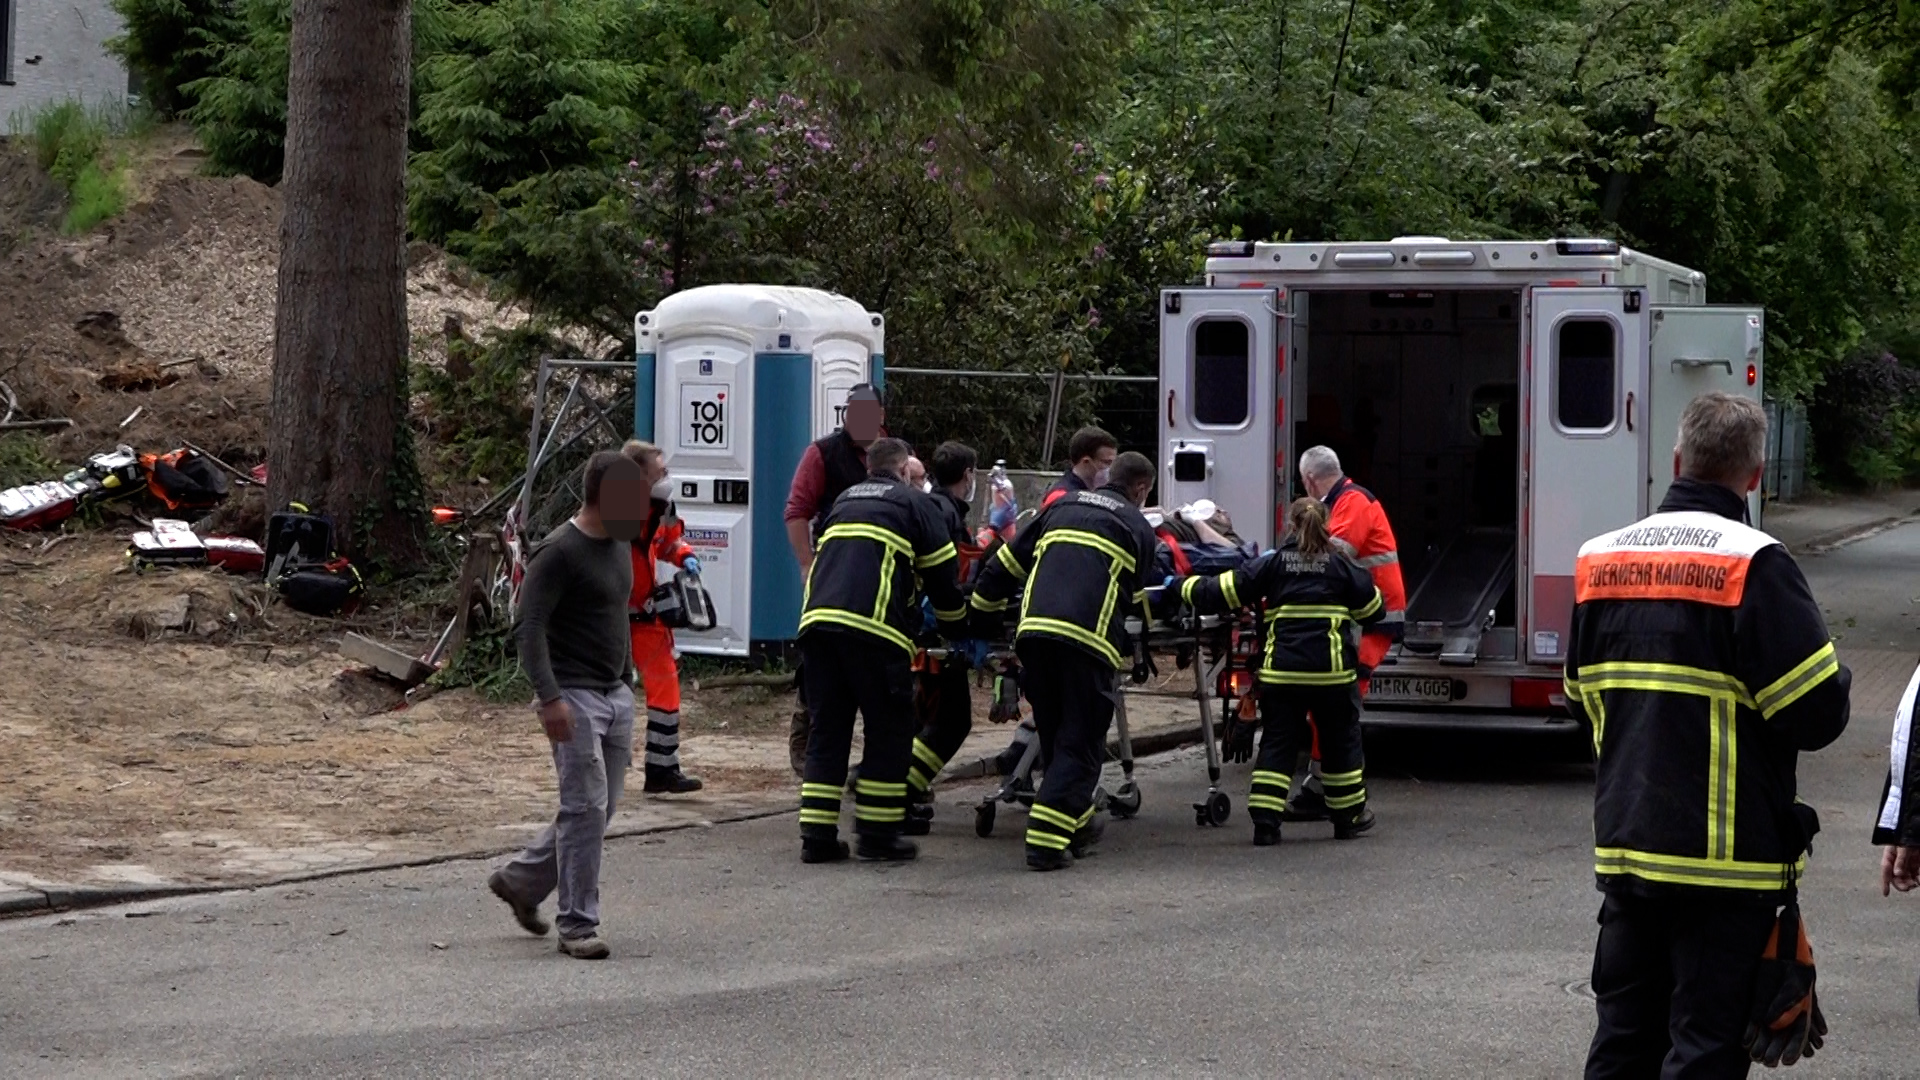 Baumpfeger stürzt in Harburg acht Meter in die Tiefe – schwer verletzt